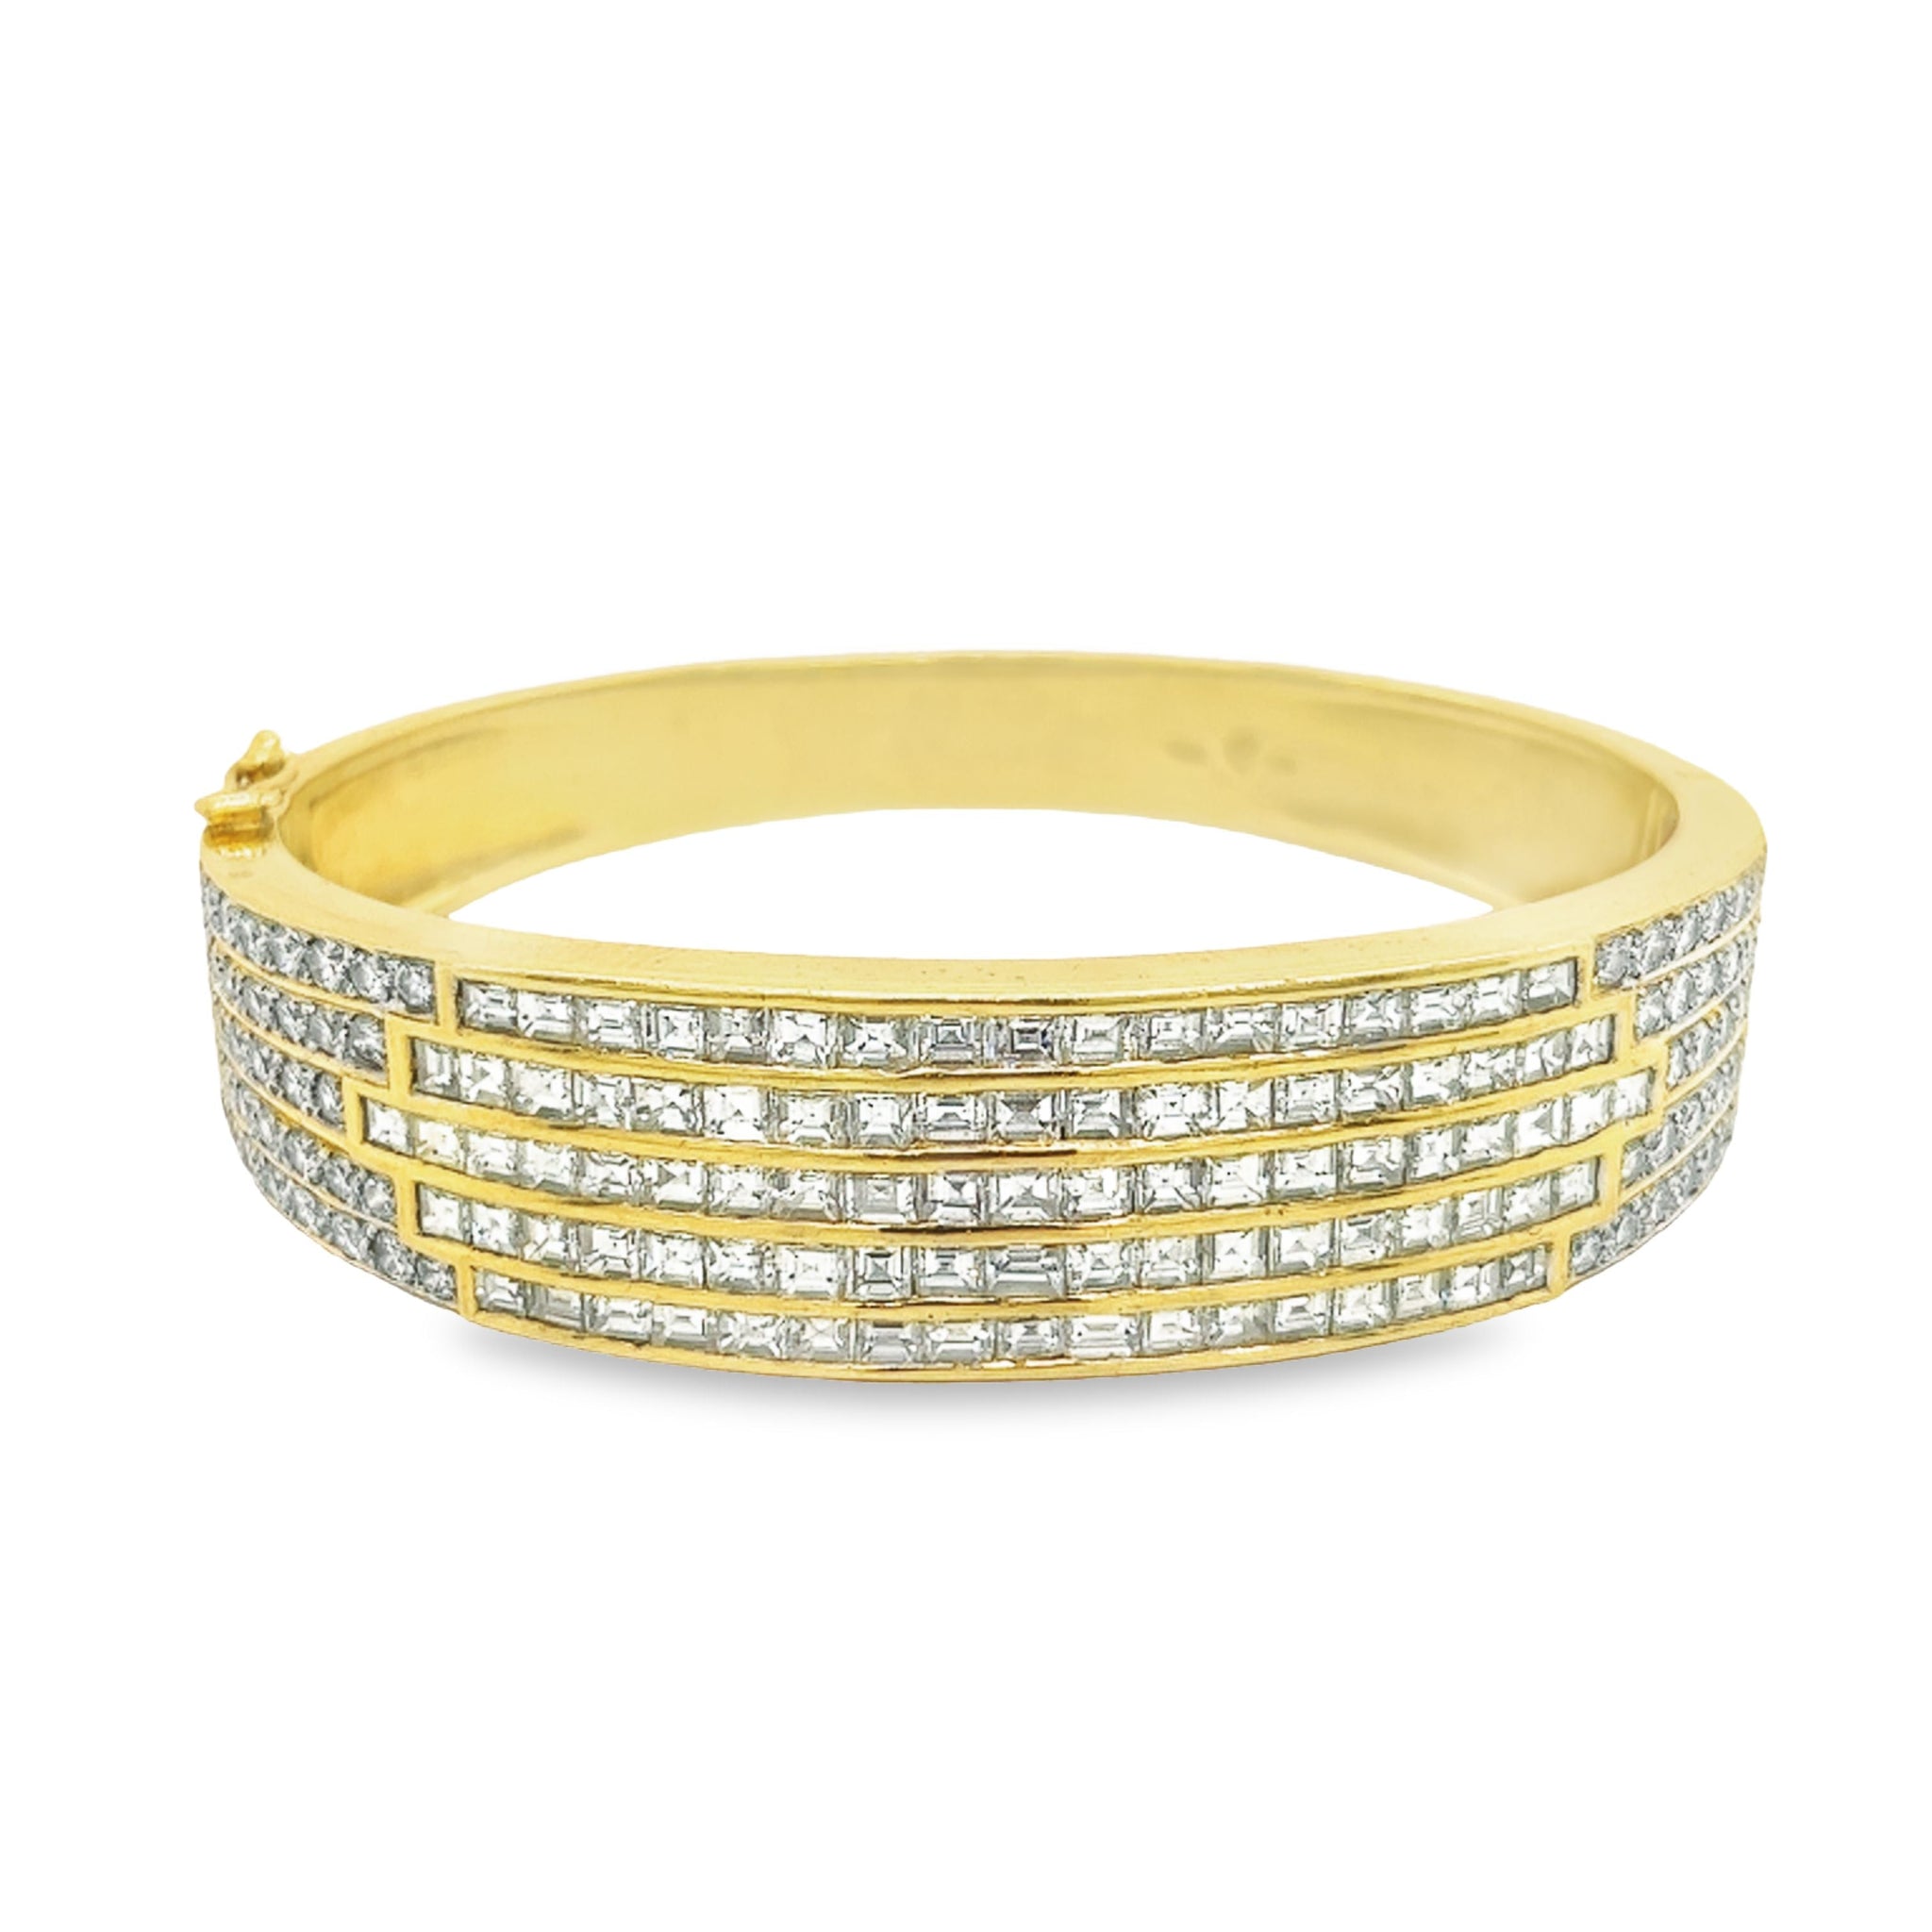 18K Rose Gold Diamond Bracelet for Men